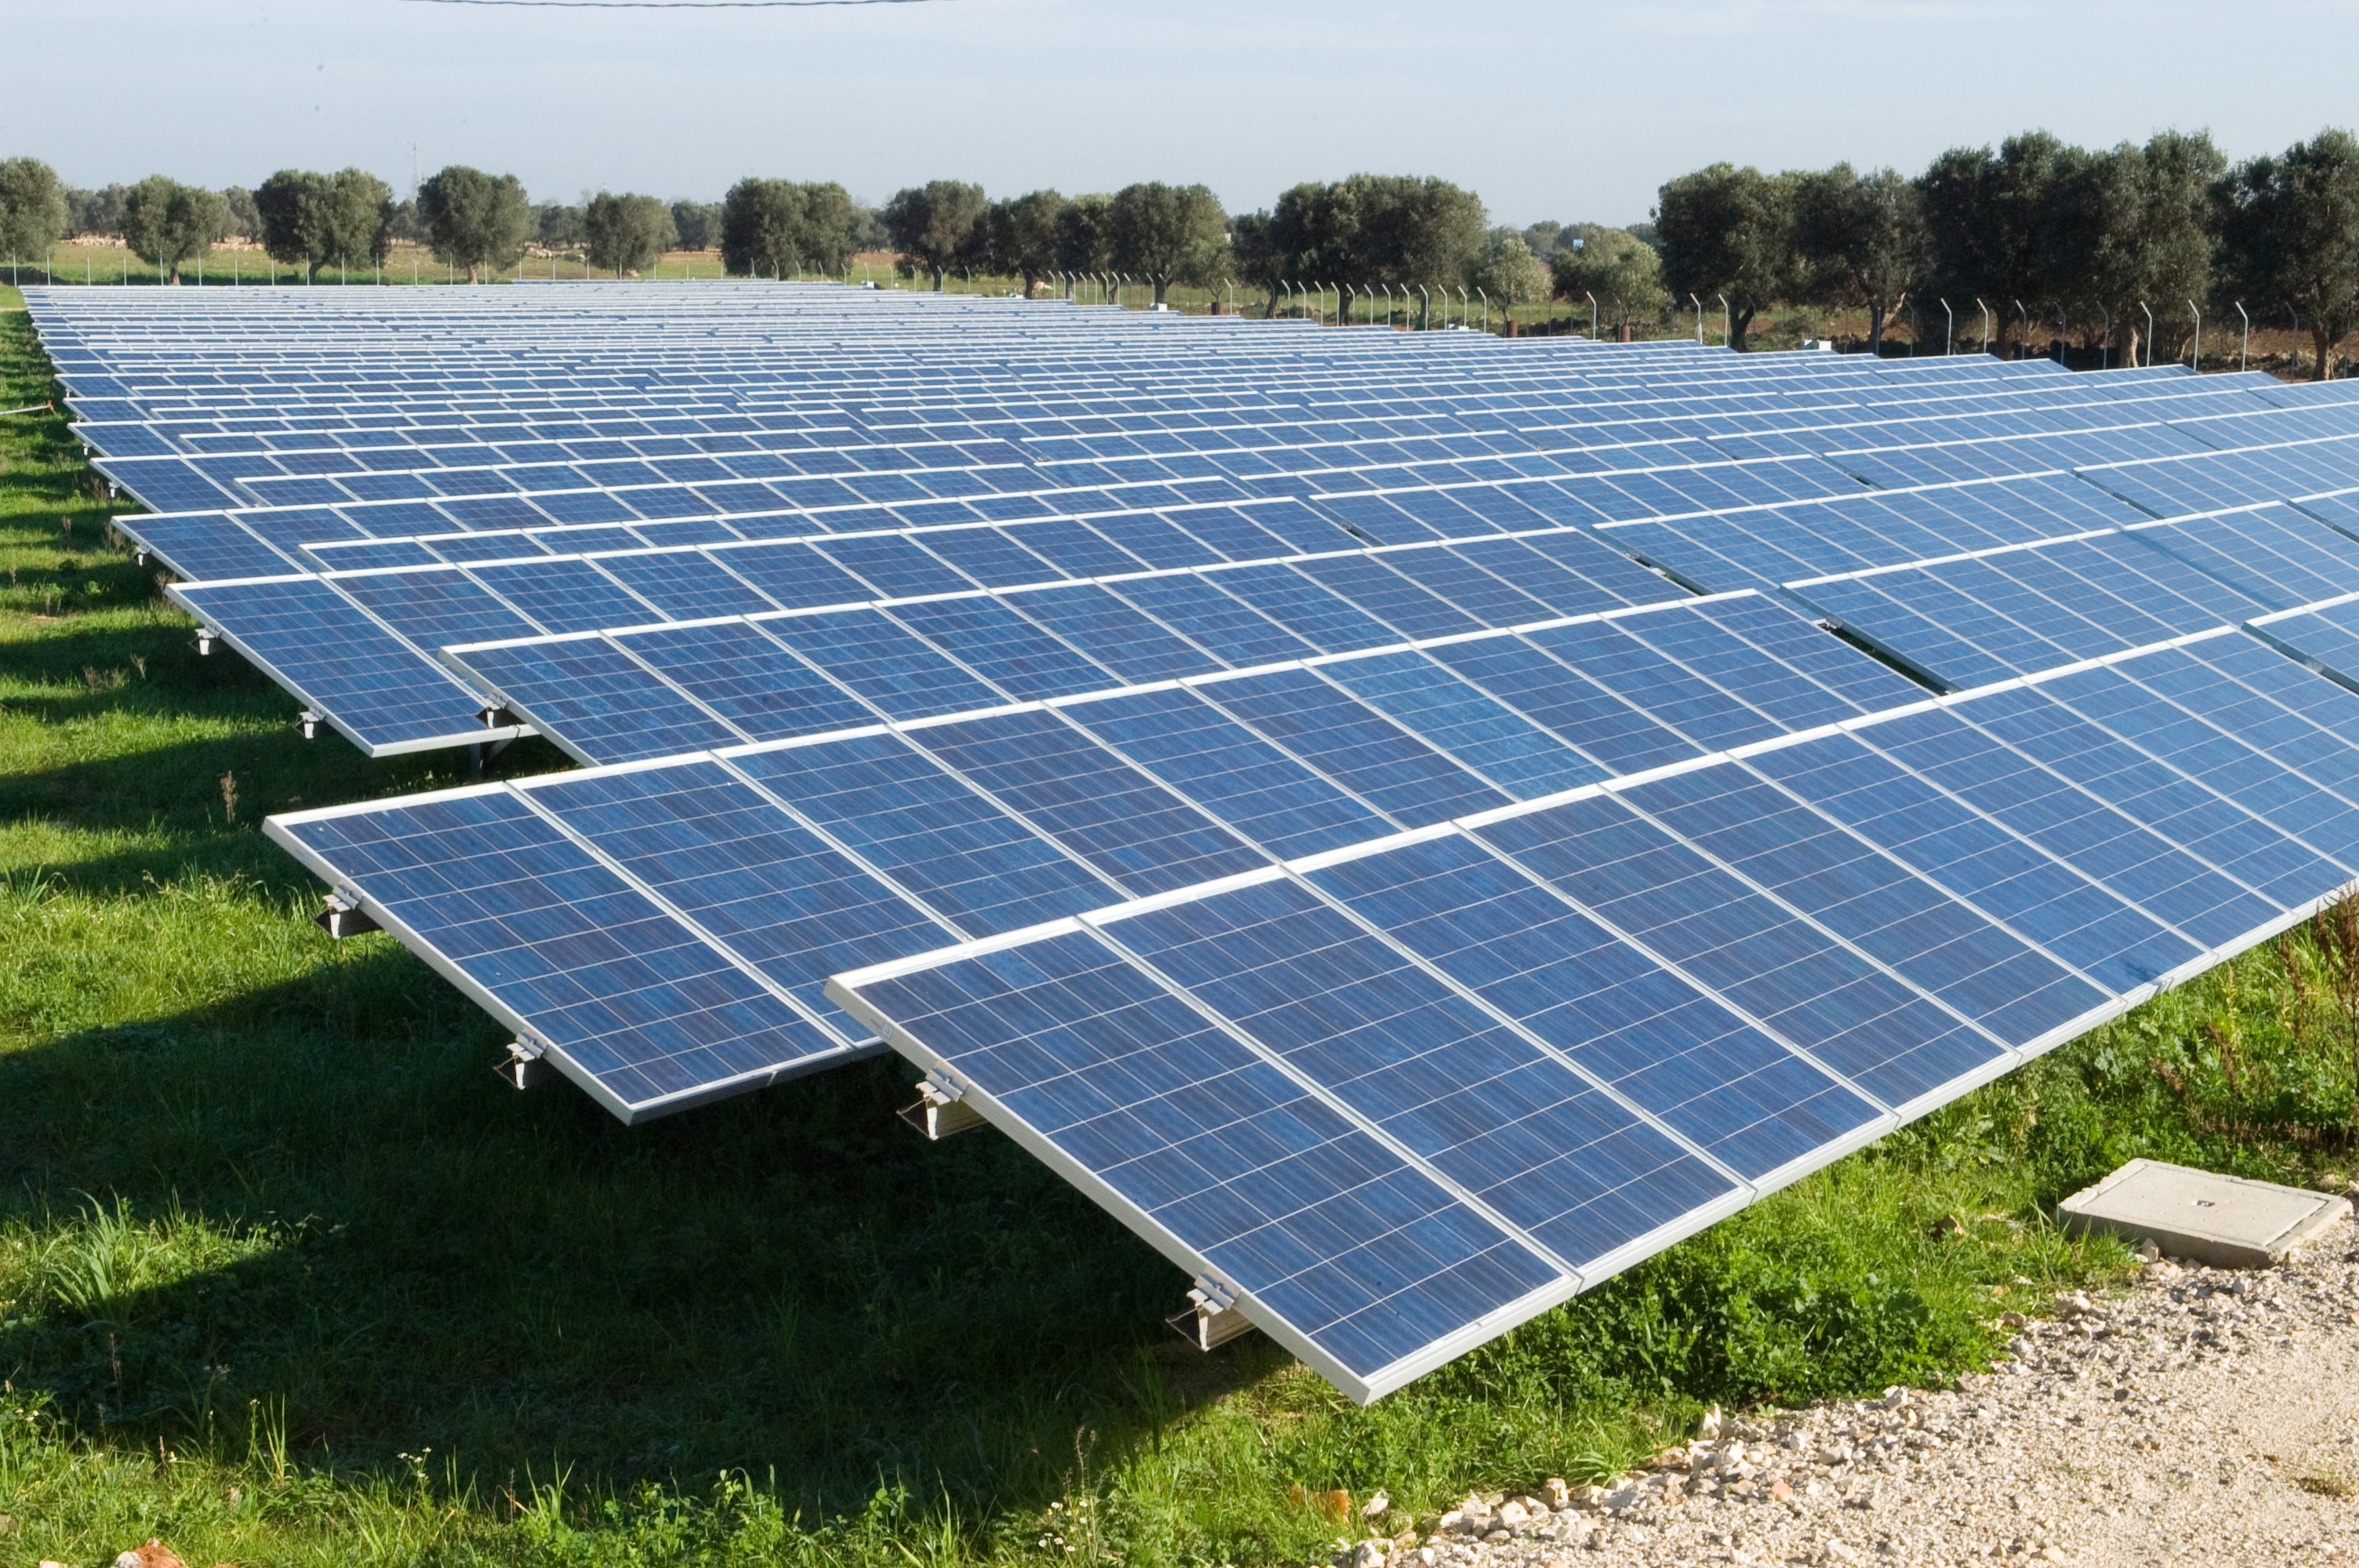 Impianto fotovoltaico: energia pulita, sfruttando il sole. E a